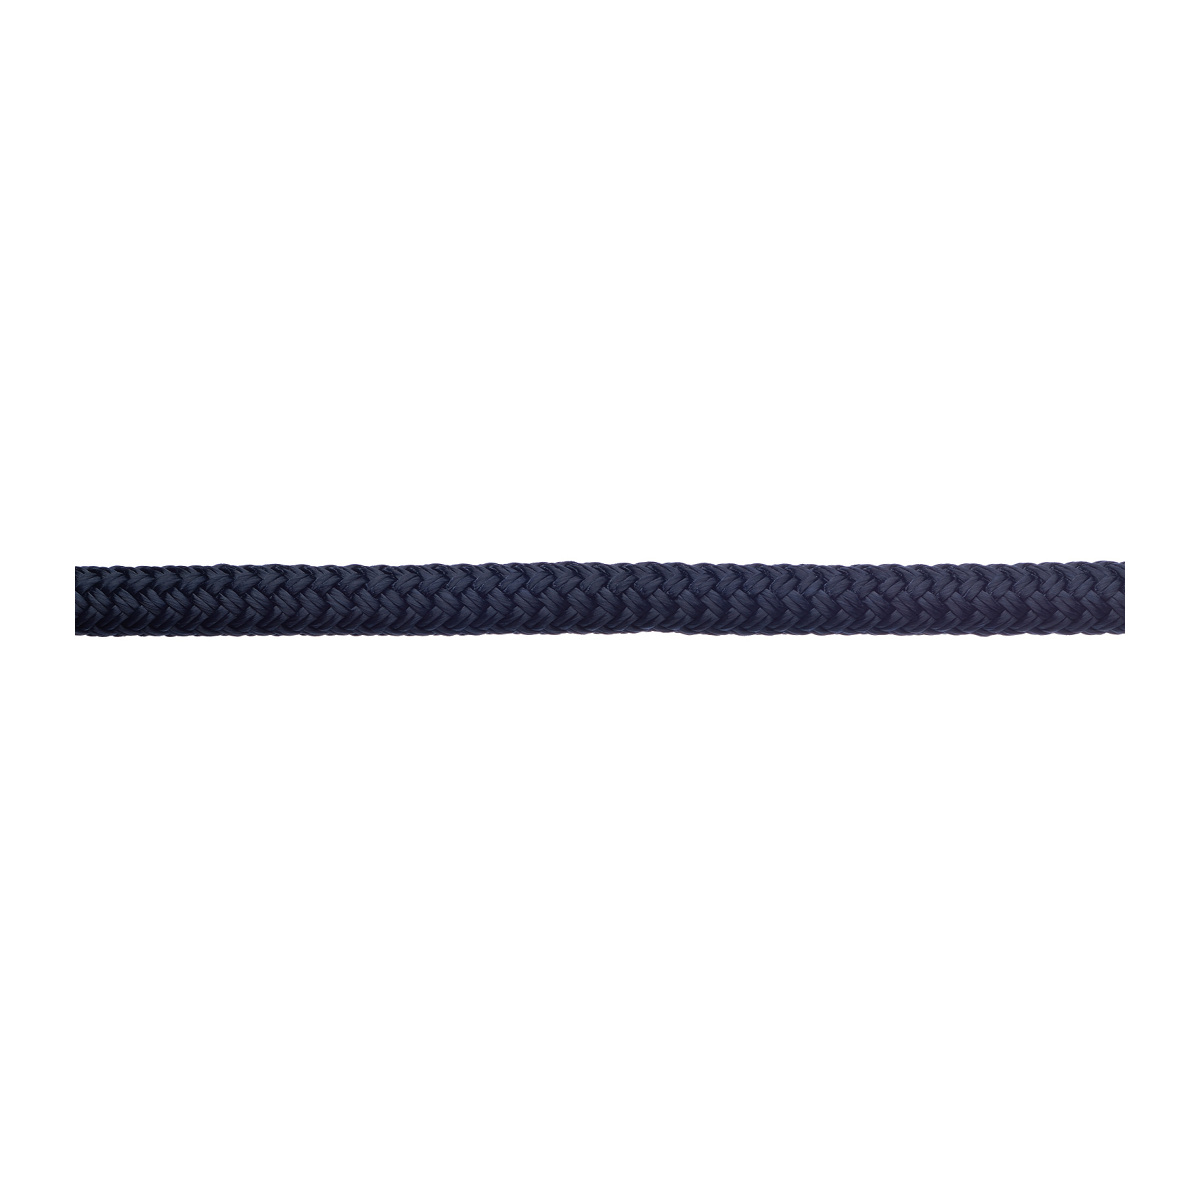 Robline amarre Rio 10mm longueur 6m navy/bleu